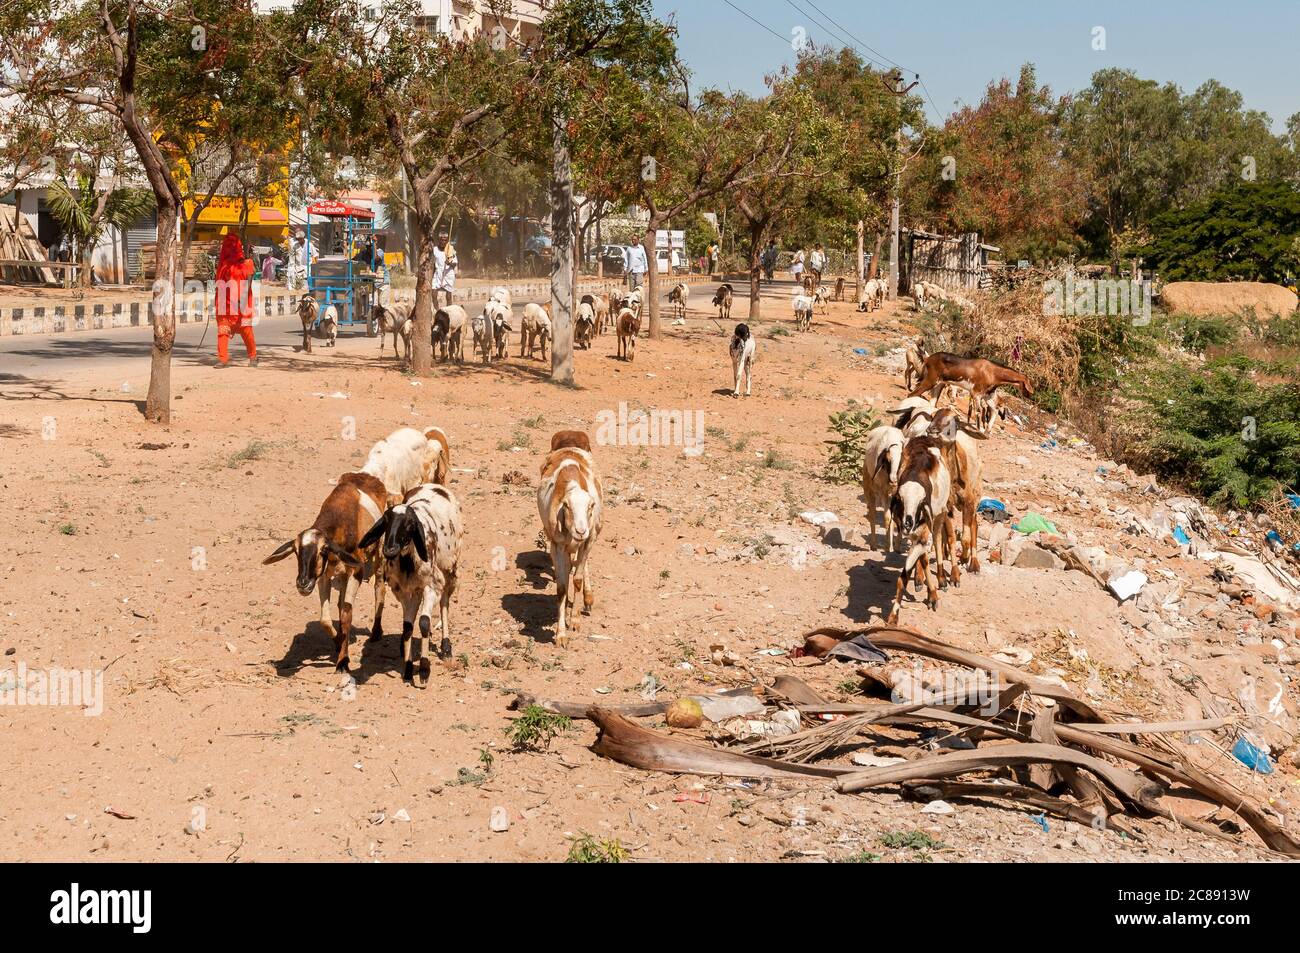 Puttaparthi, Andhra Pradesh, India - 15 de enero de 2013: Rebaño de ovejas en el camino de Puttaparthi, India Foto de stock